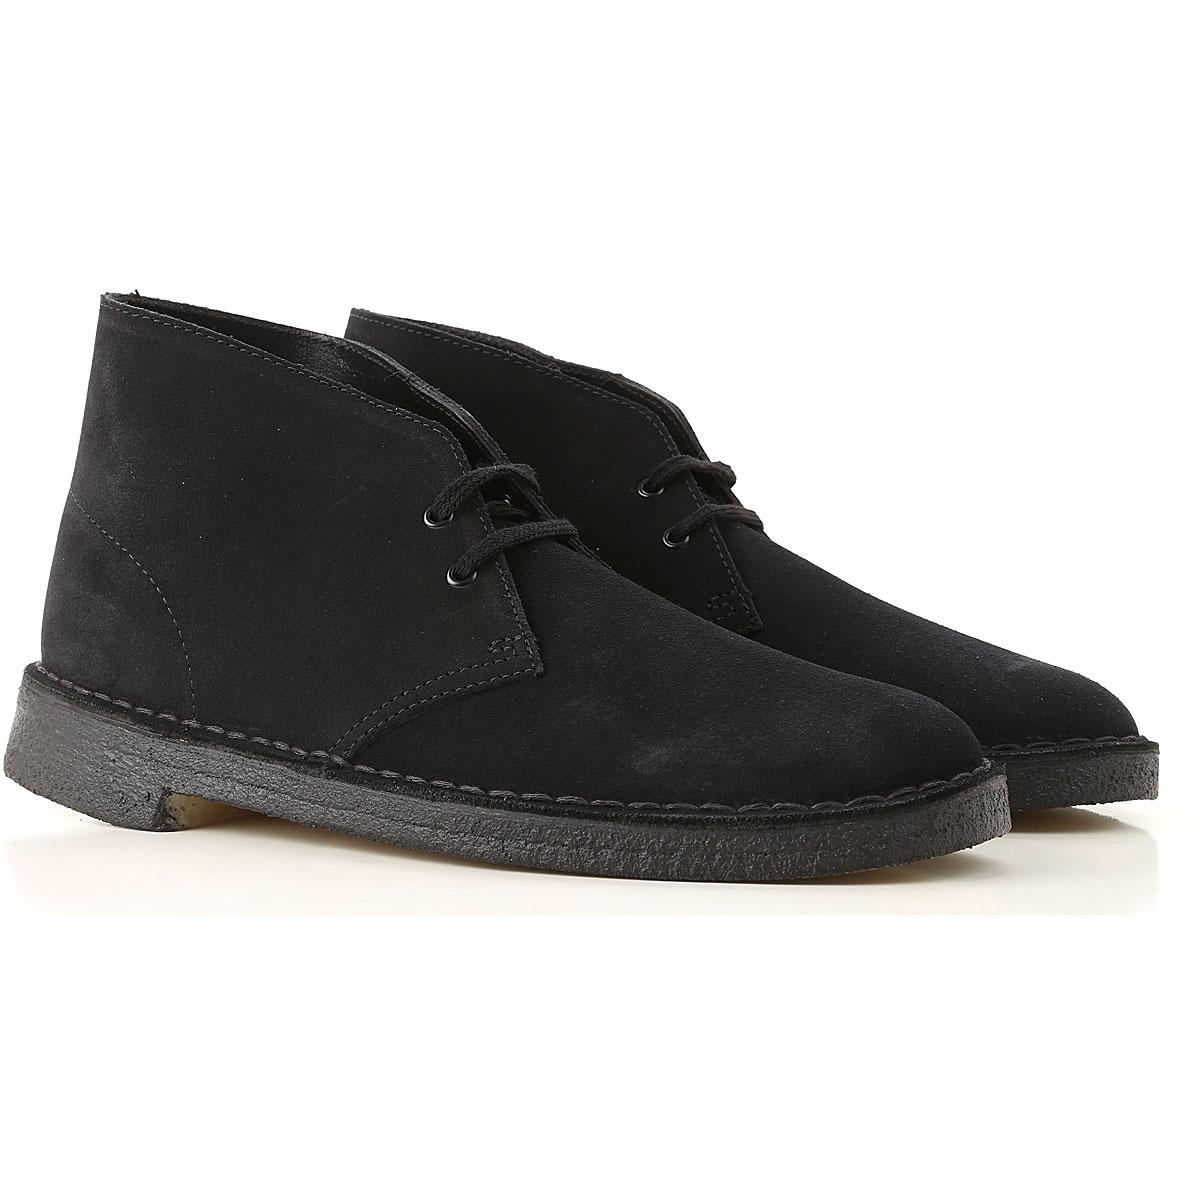 Clarks Desert Boots Chukka For Men On Sale in Black for Men - Lyst